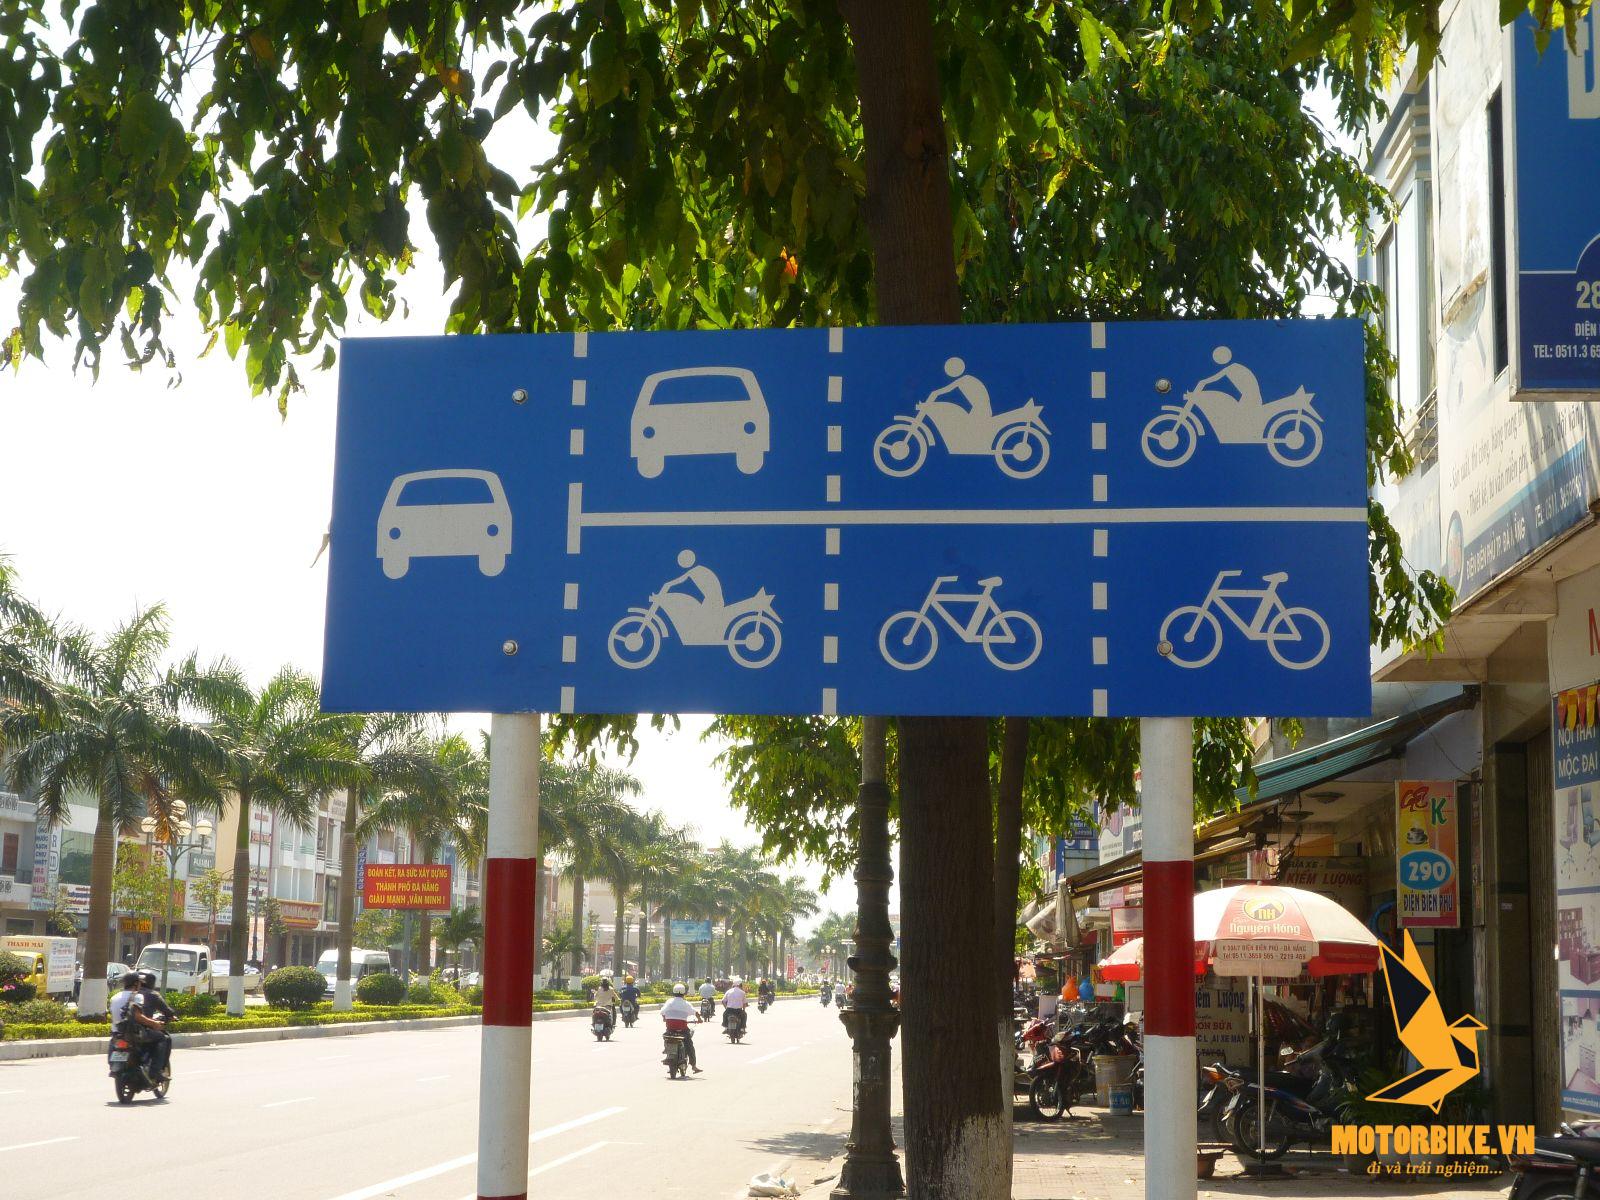 Biển hiệu lệnh quy định về việc sử dụng làn đường khi tham gia giao thông